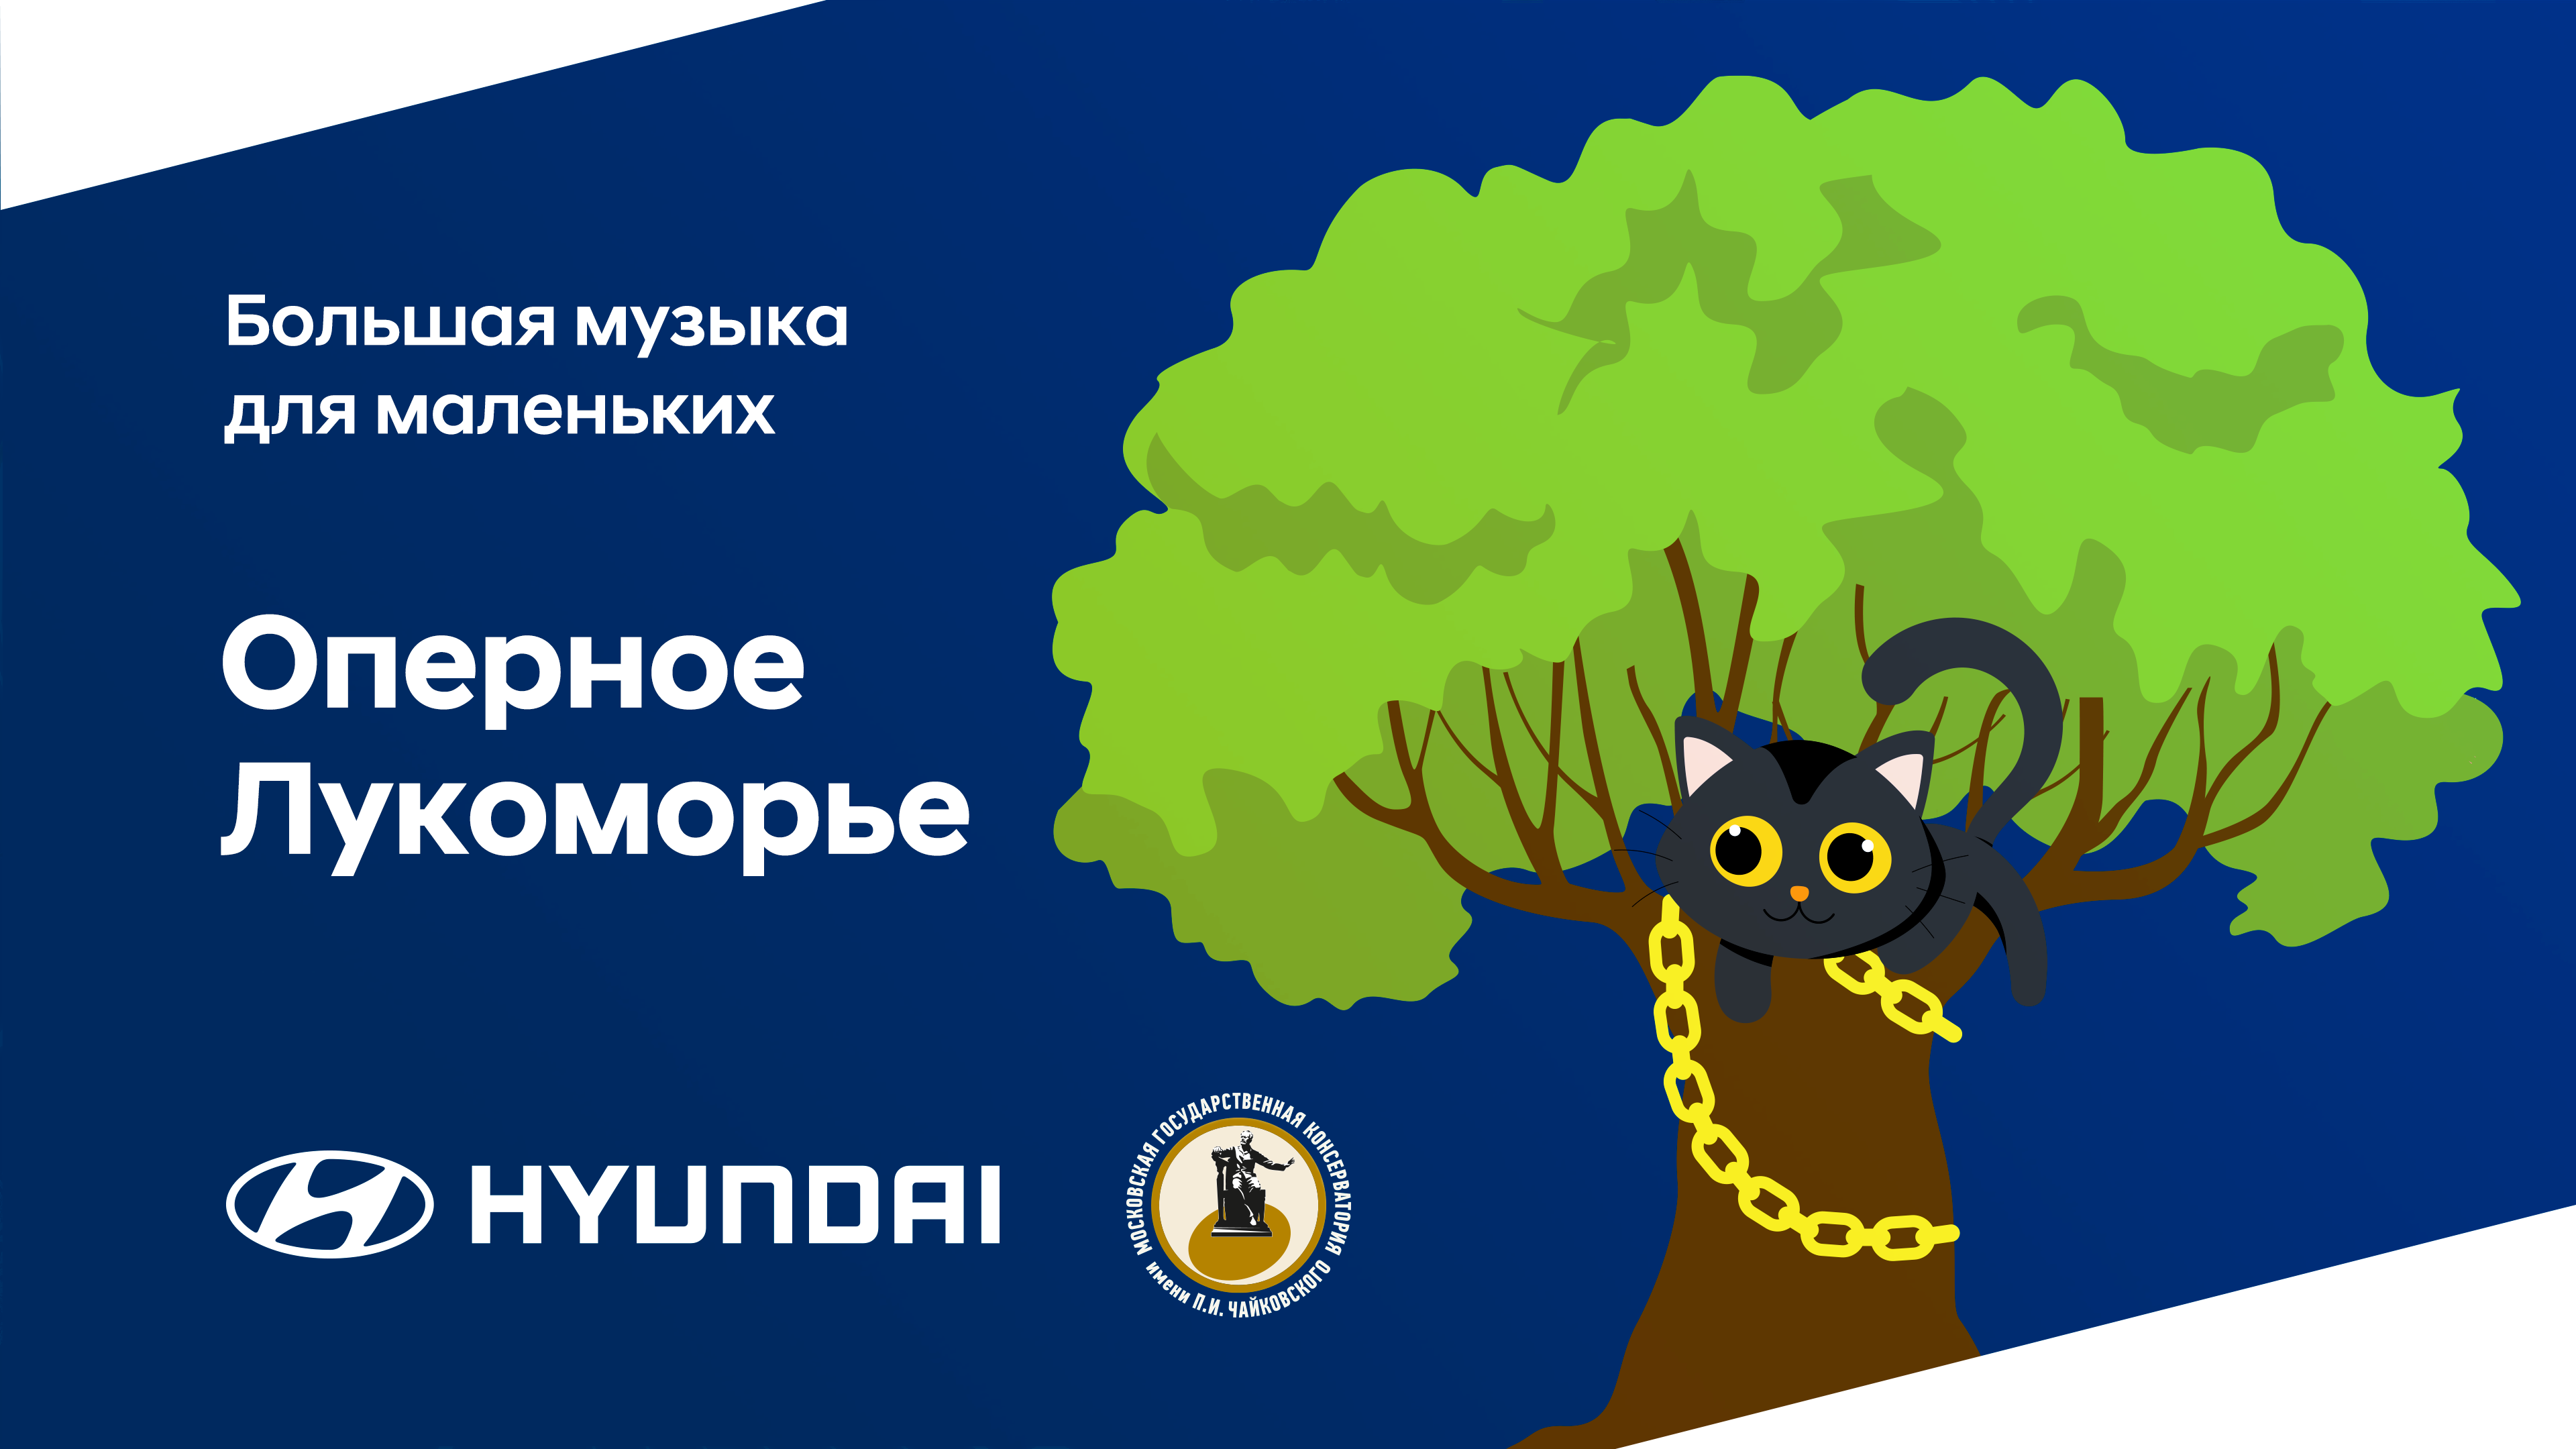 Hyundai и Московская консерватория приглашают юных зрителей отправиться в путешествие по Лукоморью